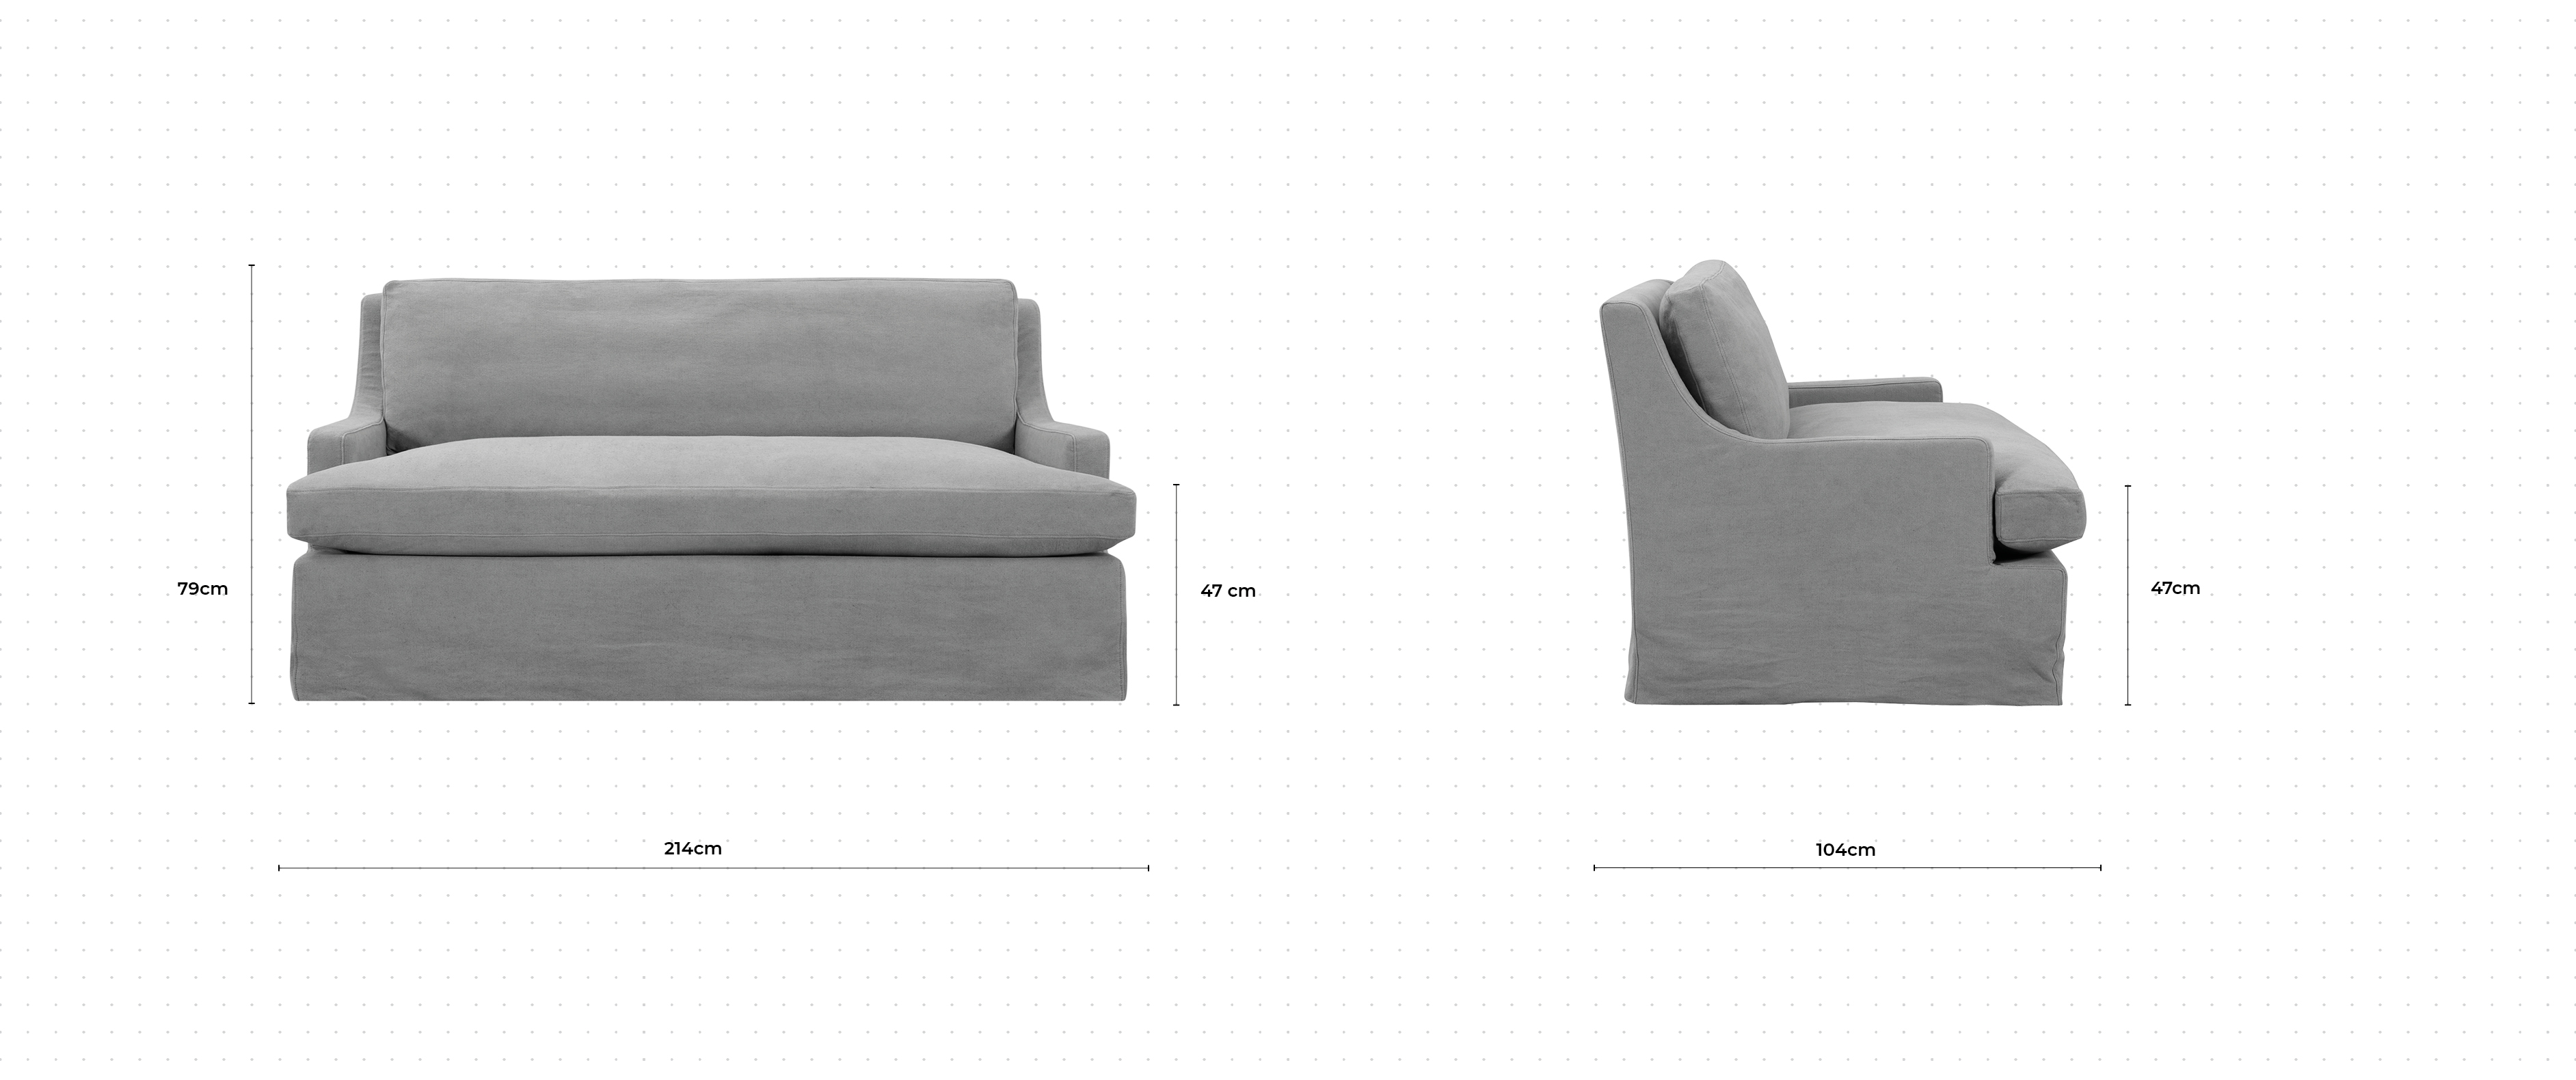 Isle 2 Seater Sofa dimensions